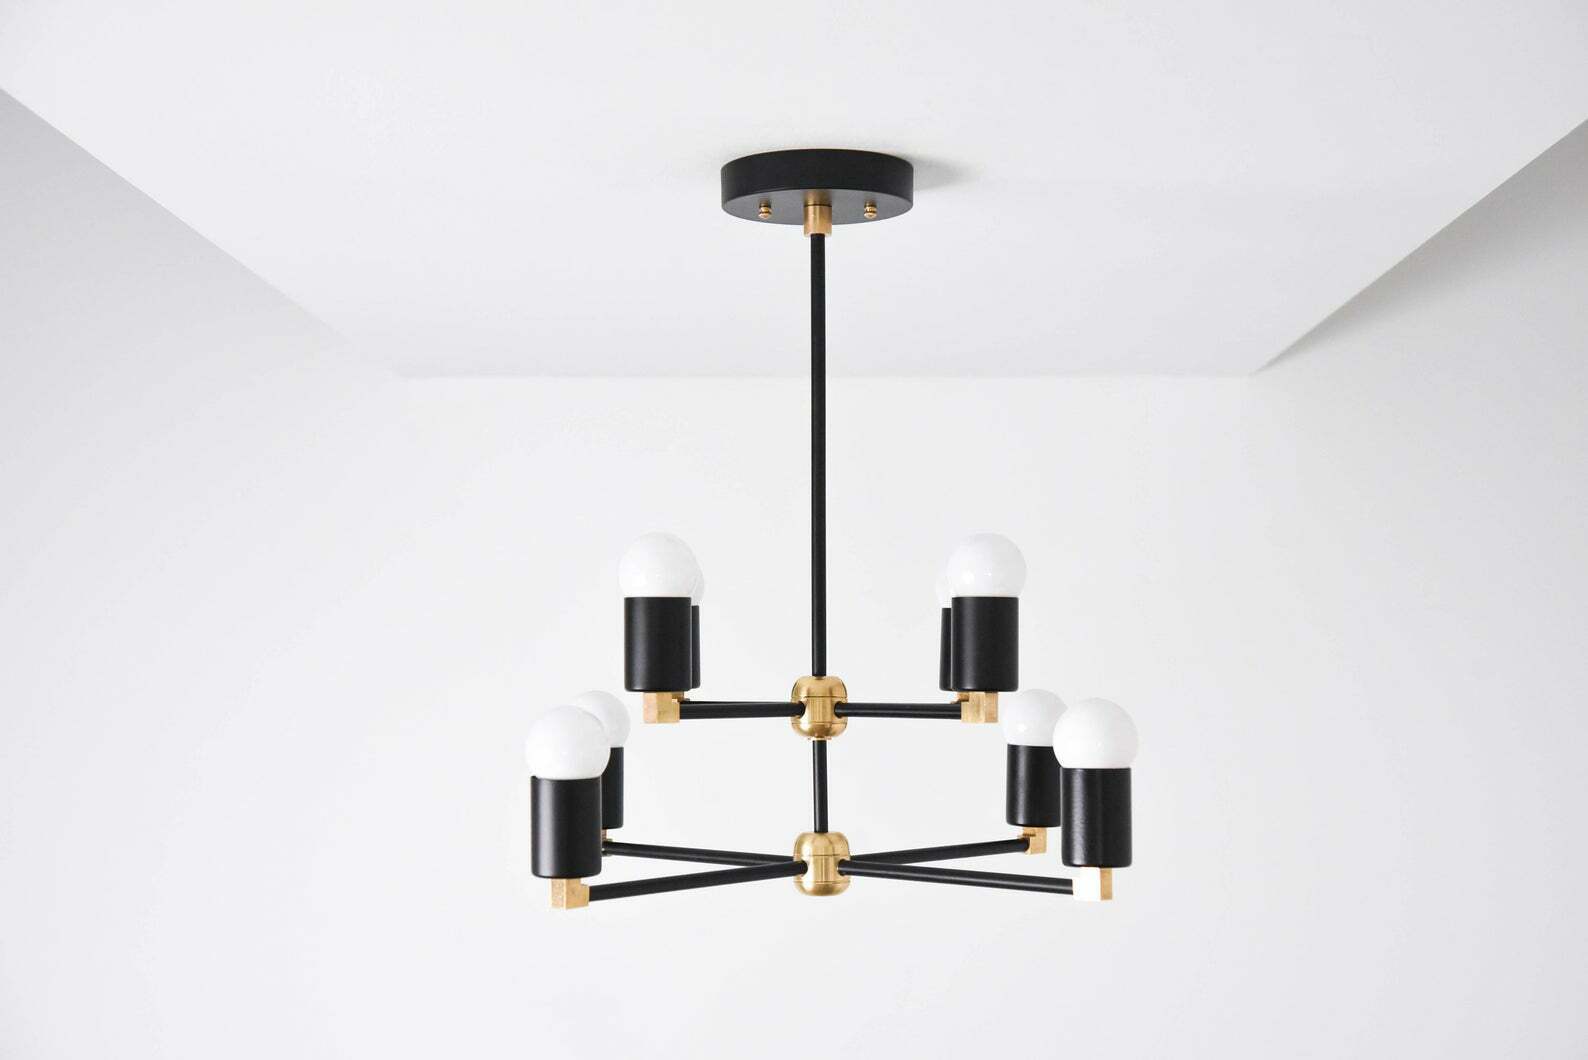 8 Light Sputnik Brass Chandelier Handmade Industrial Light Fixture - Doozie Light Studio